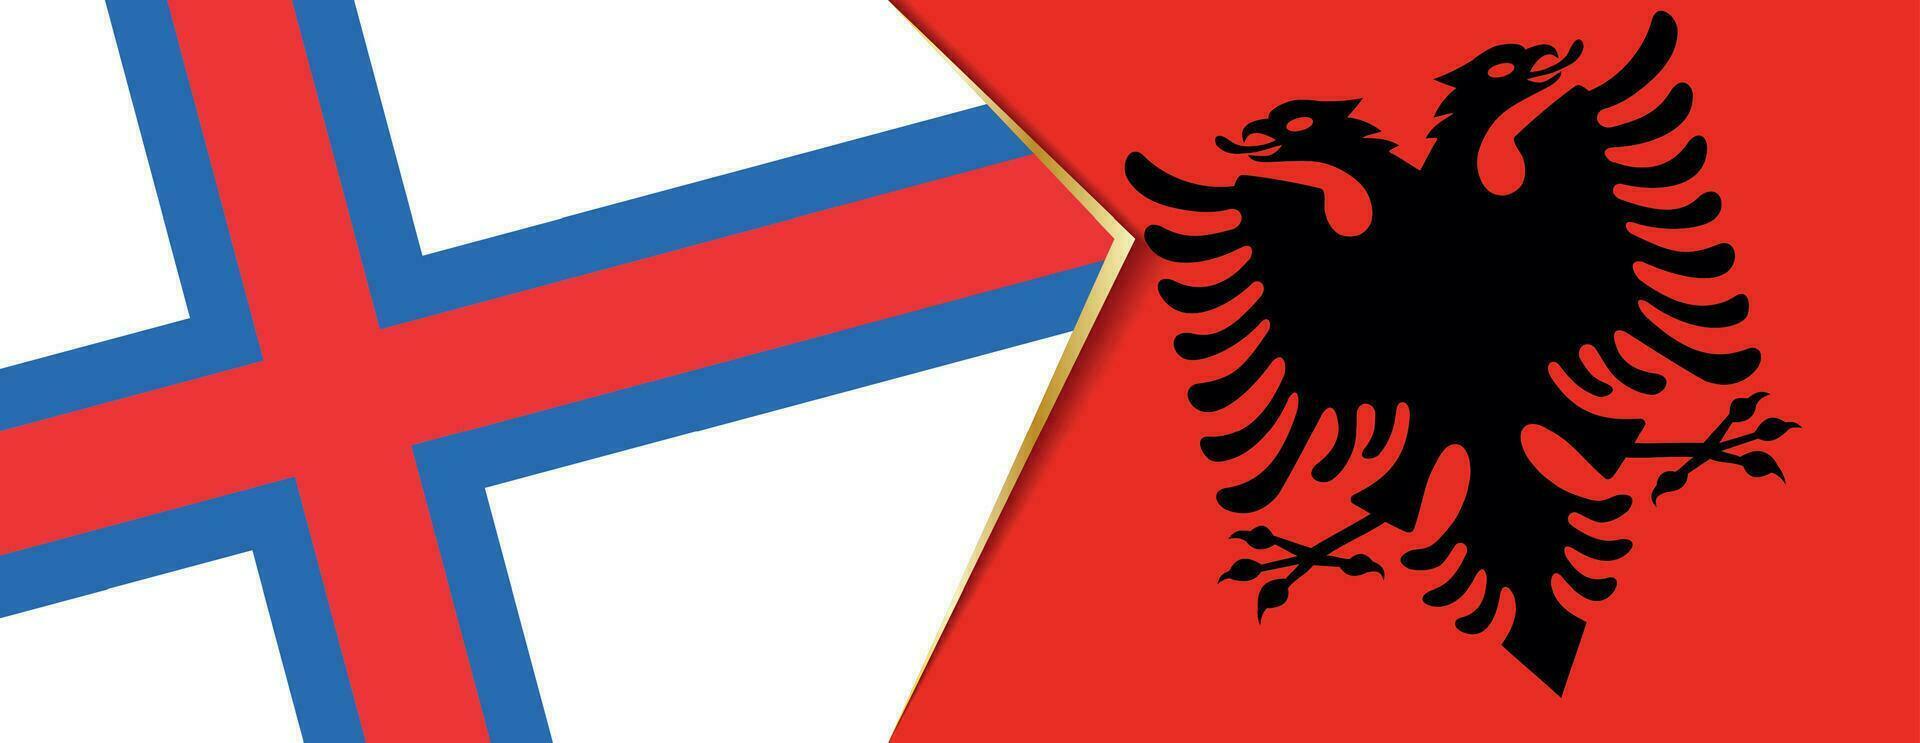 faroe öar och albania flaggor, två vektor flaggor.